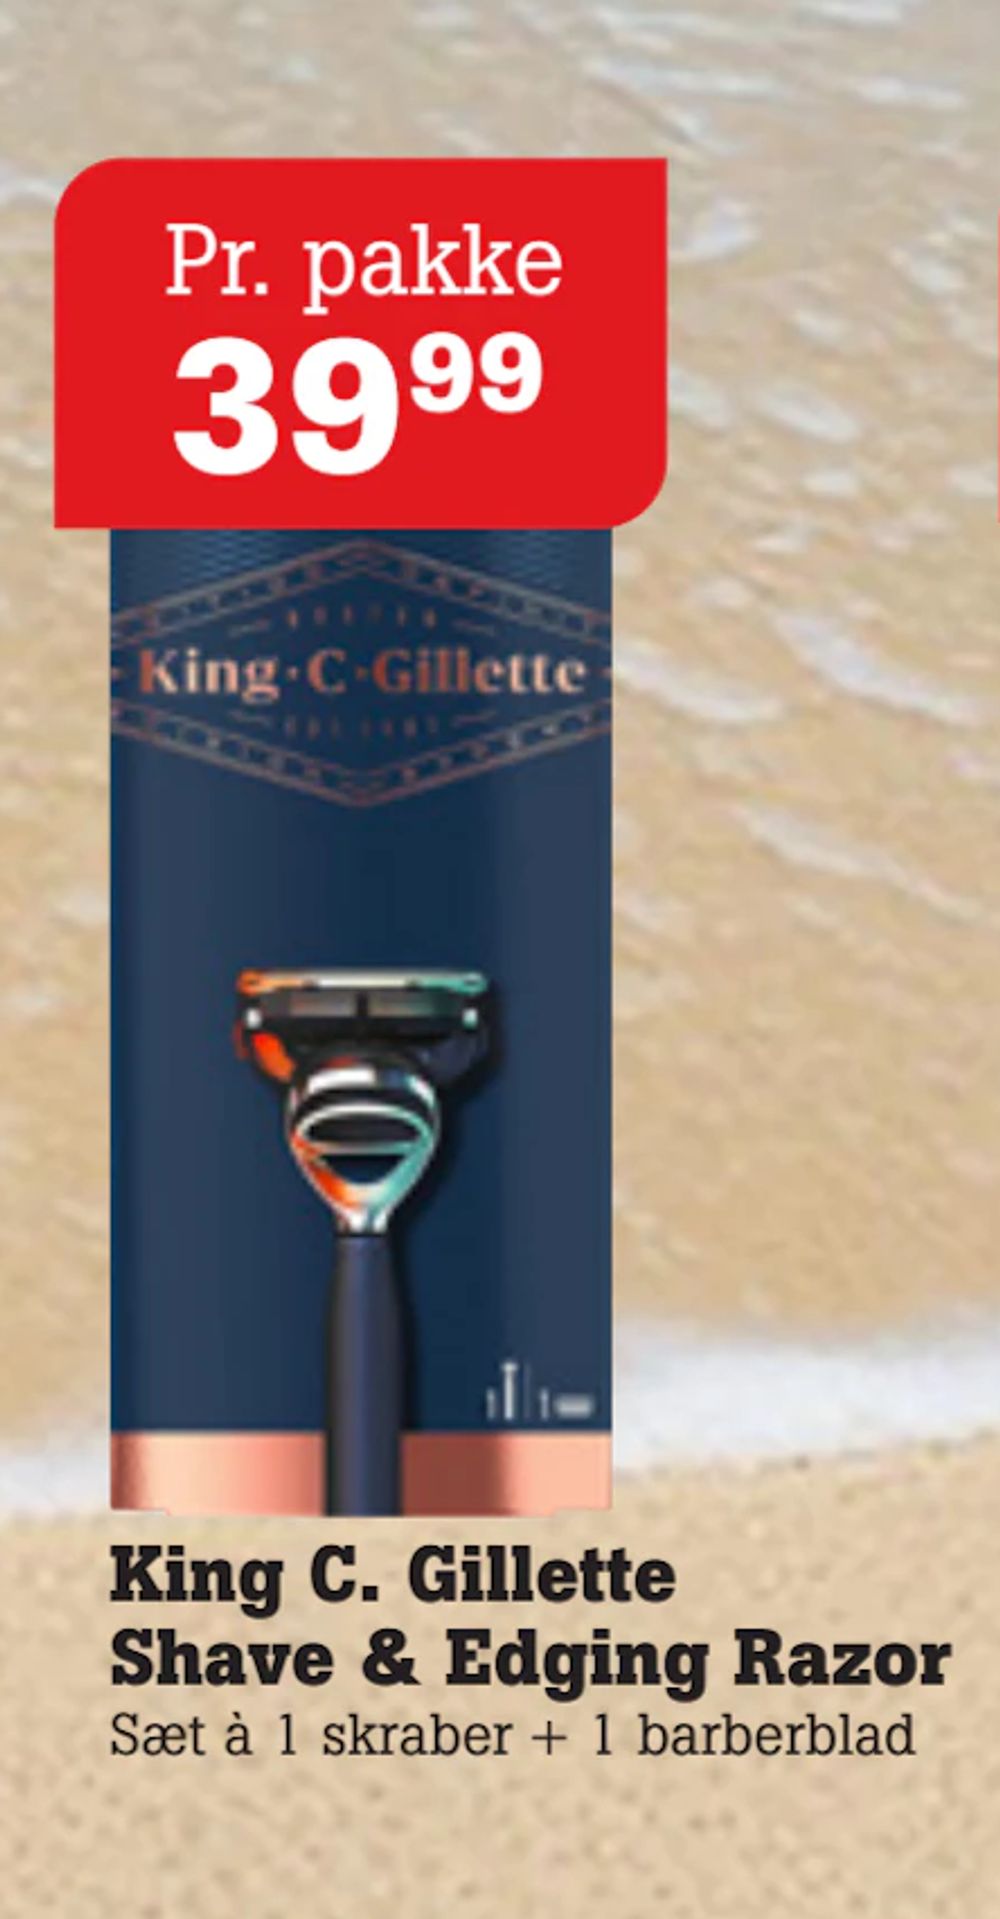 Tilbud på King C. Gillette Shave & Edging Razor fra Poetzsch Padborg til 39,99 kr.